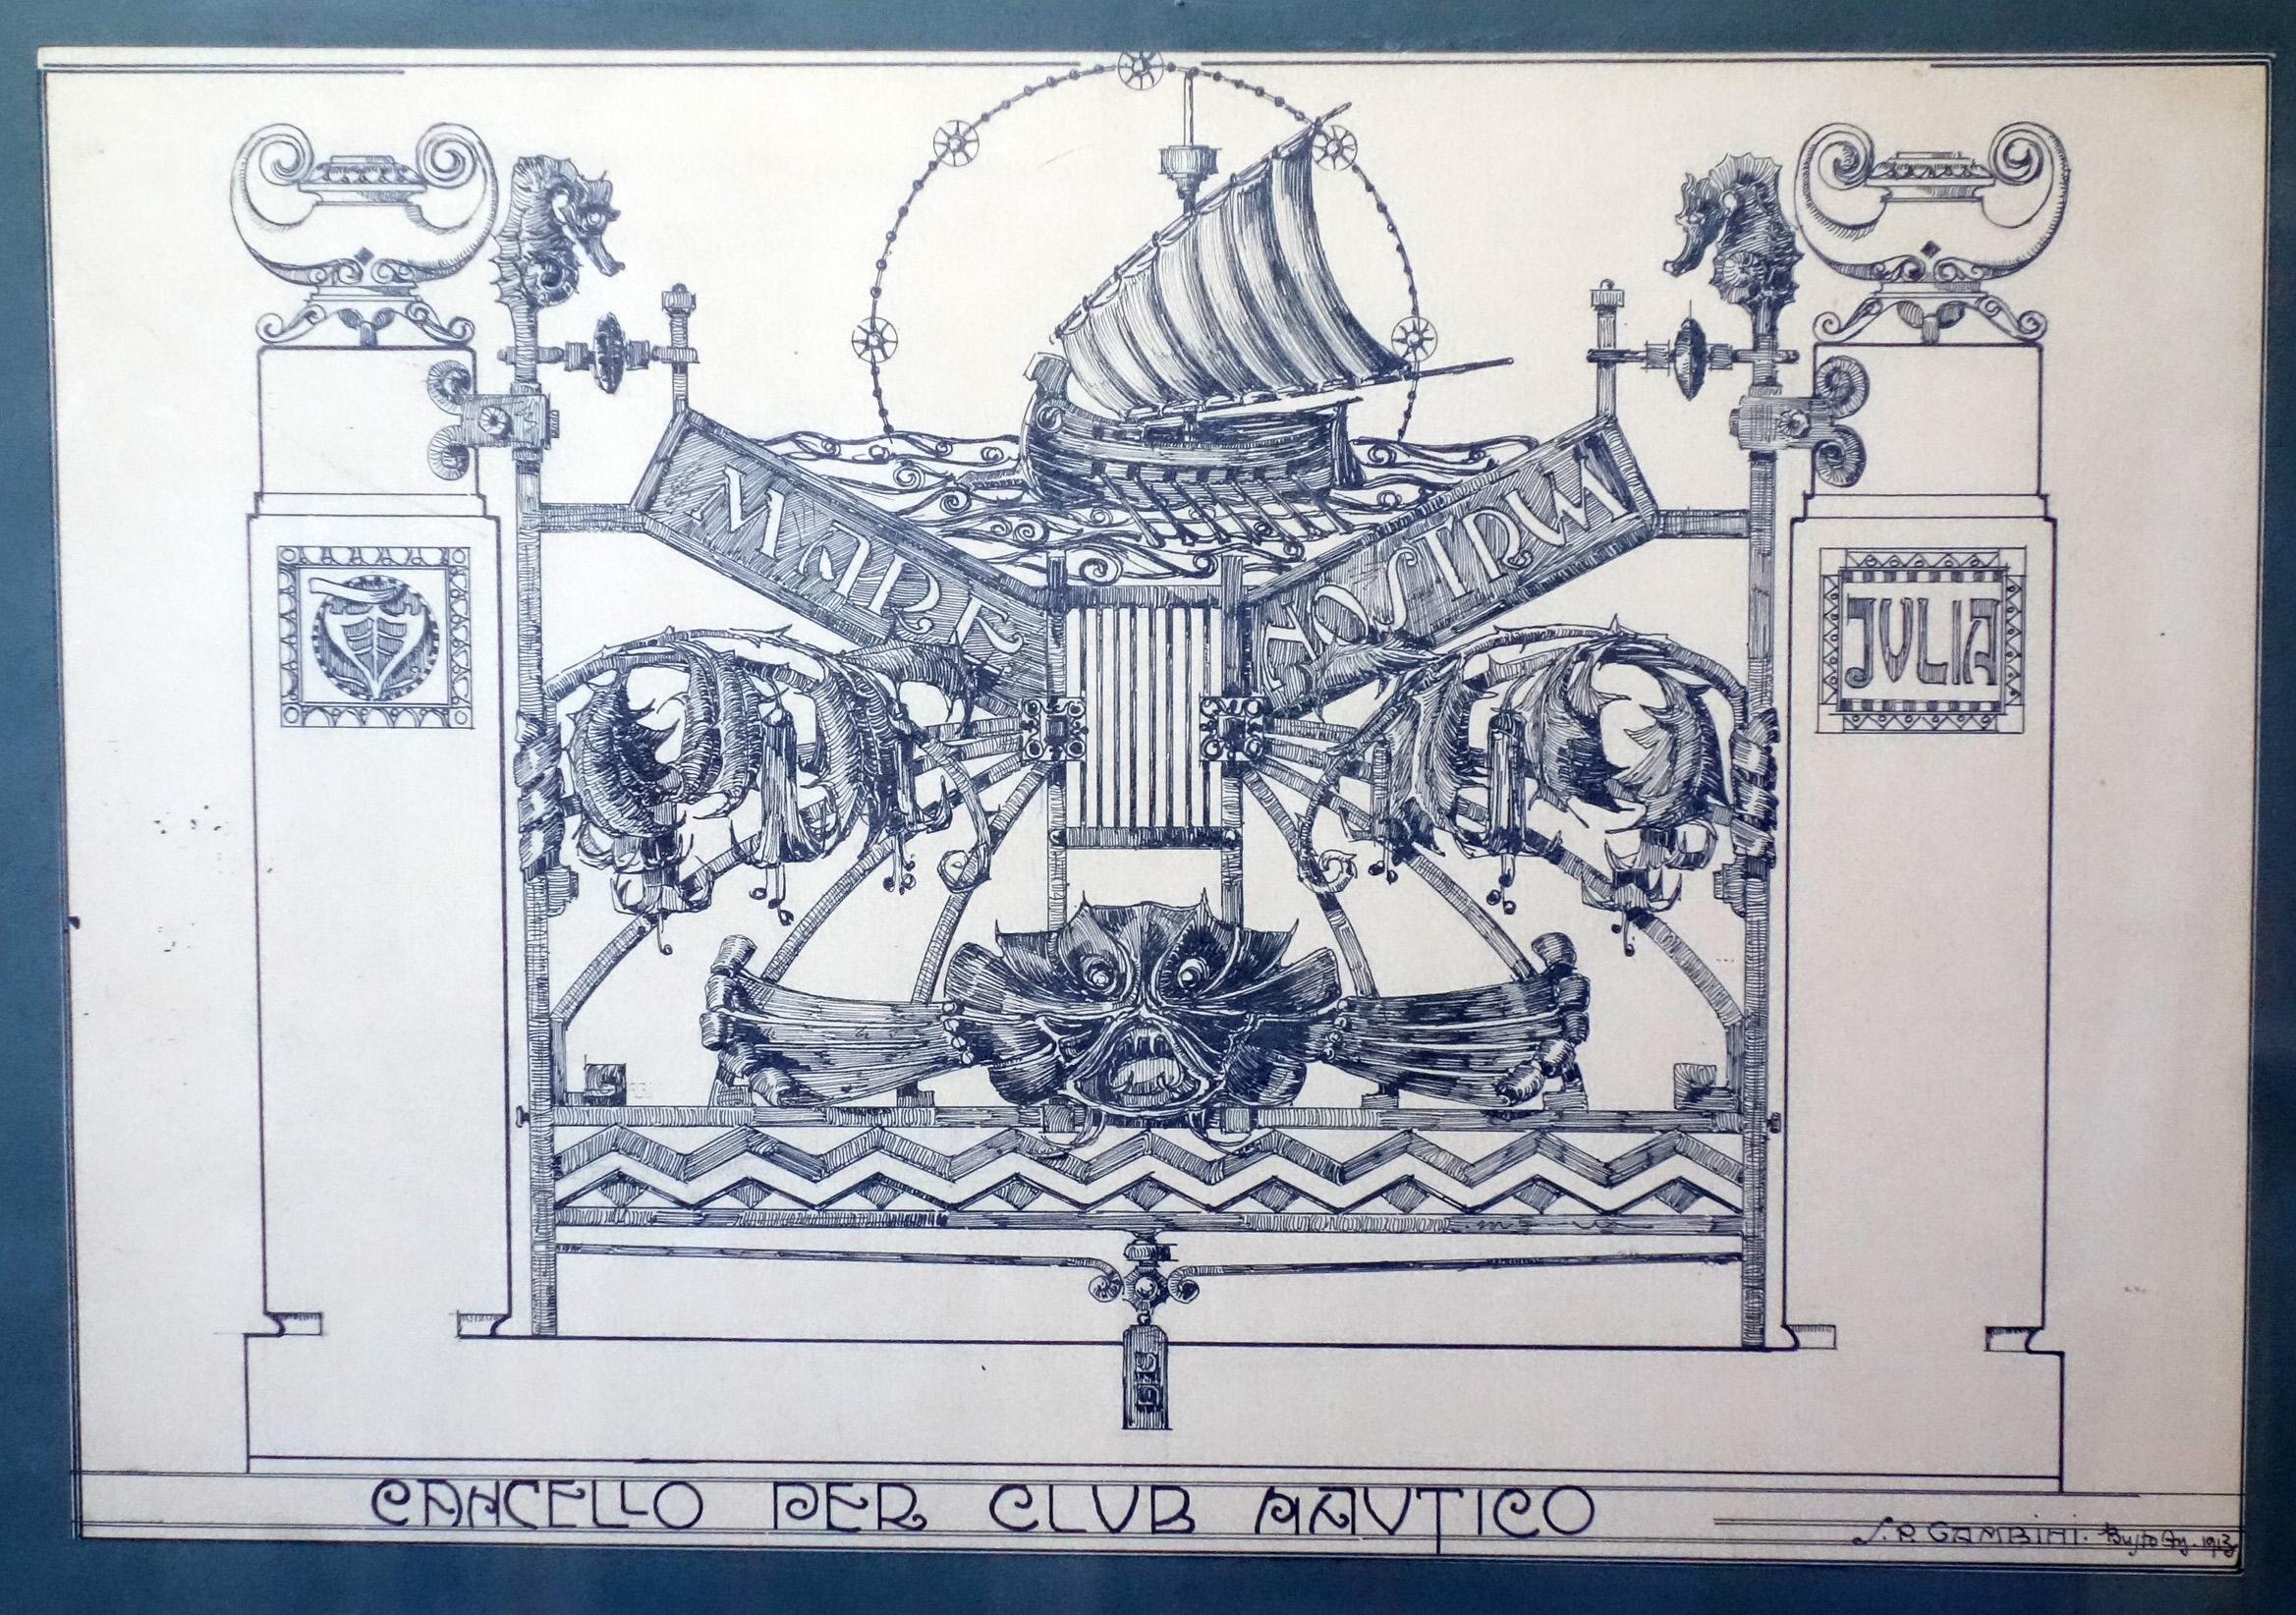 Silvio Gambini
Italie, 1913

Studio di Cancellata in Ferro Battuto (Studio d'annulation en fer battu)
Disegno su Carta
Corniche Liberty in legno Originale

Firma dell'artista in basso a destra

Misure carta :  27.5x39
Misure corniche : 77.5x61x2.5